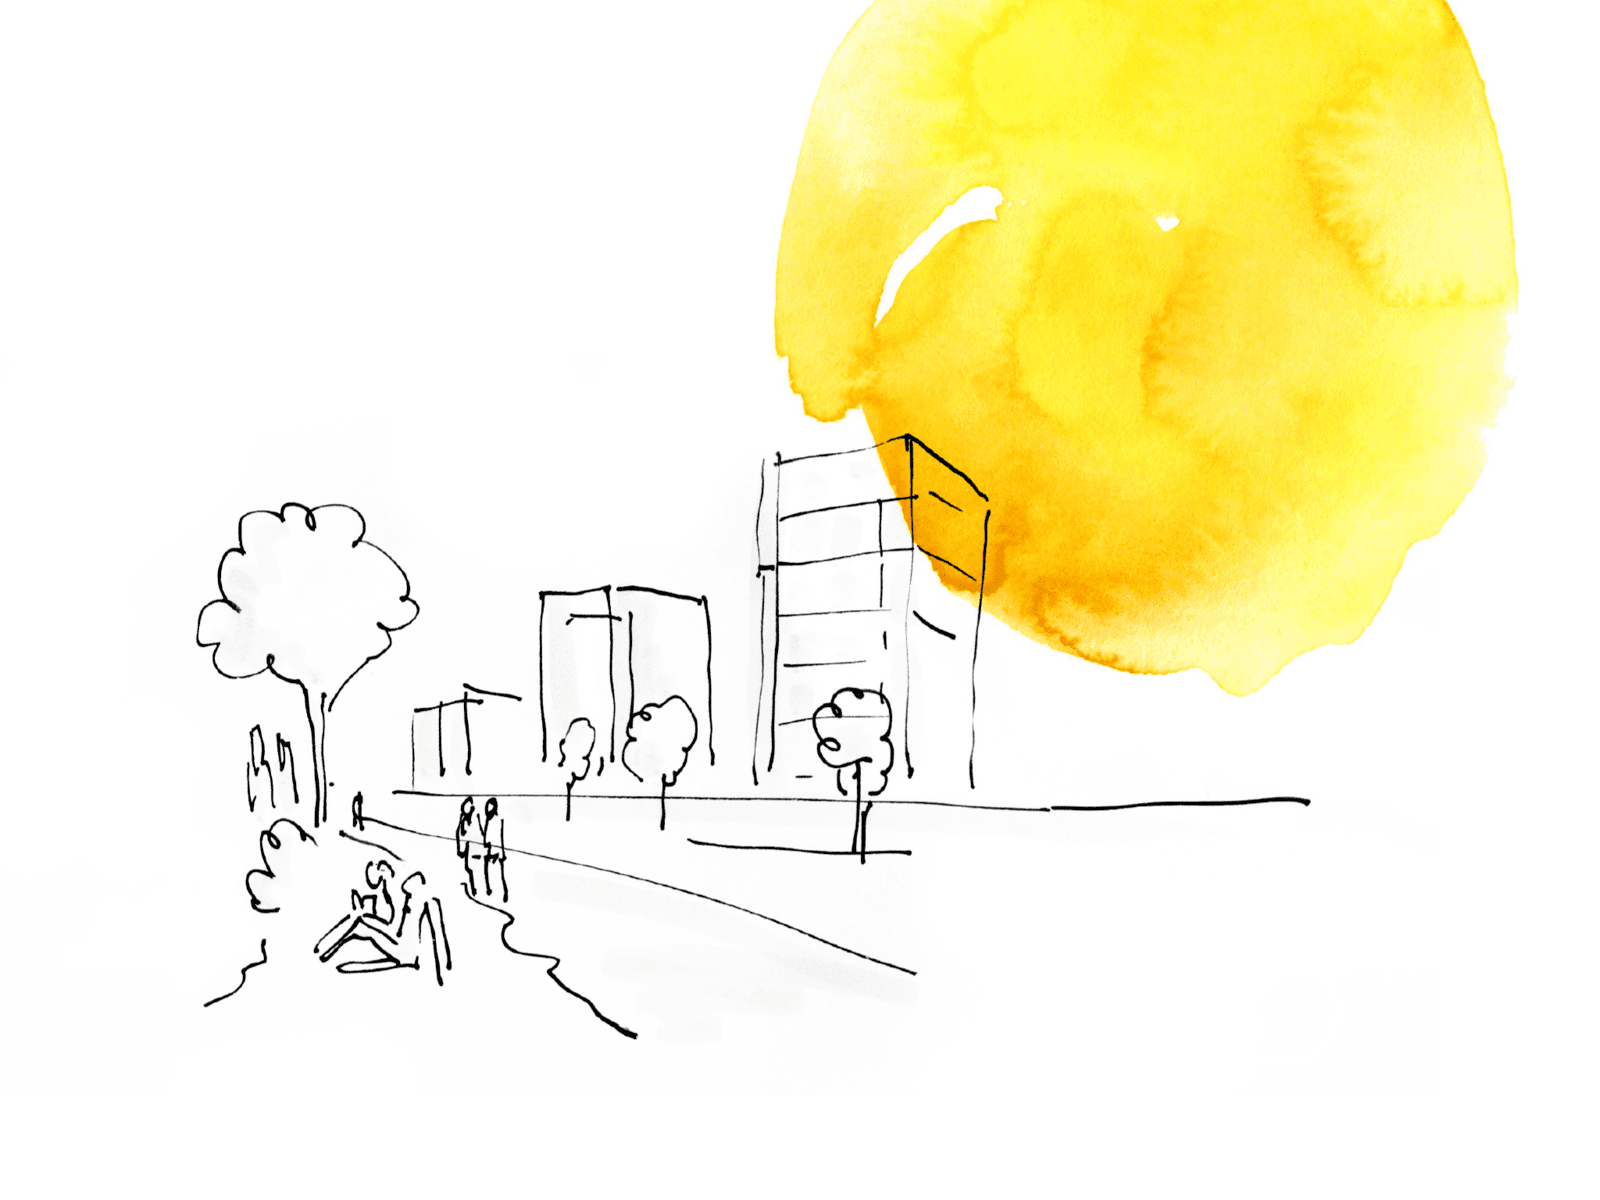 Eine überwiegend weiße Zeichnung, die Menschen im Freien zeigt. Am Rand ein gelber Tuscheklecks.